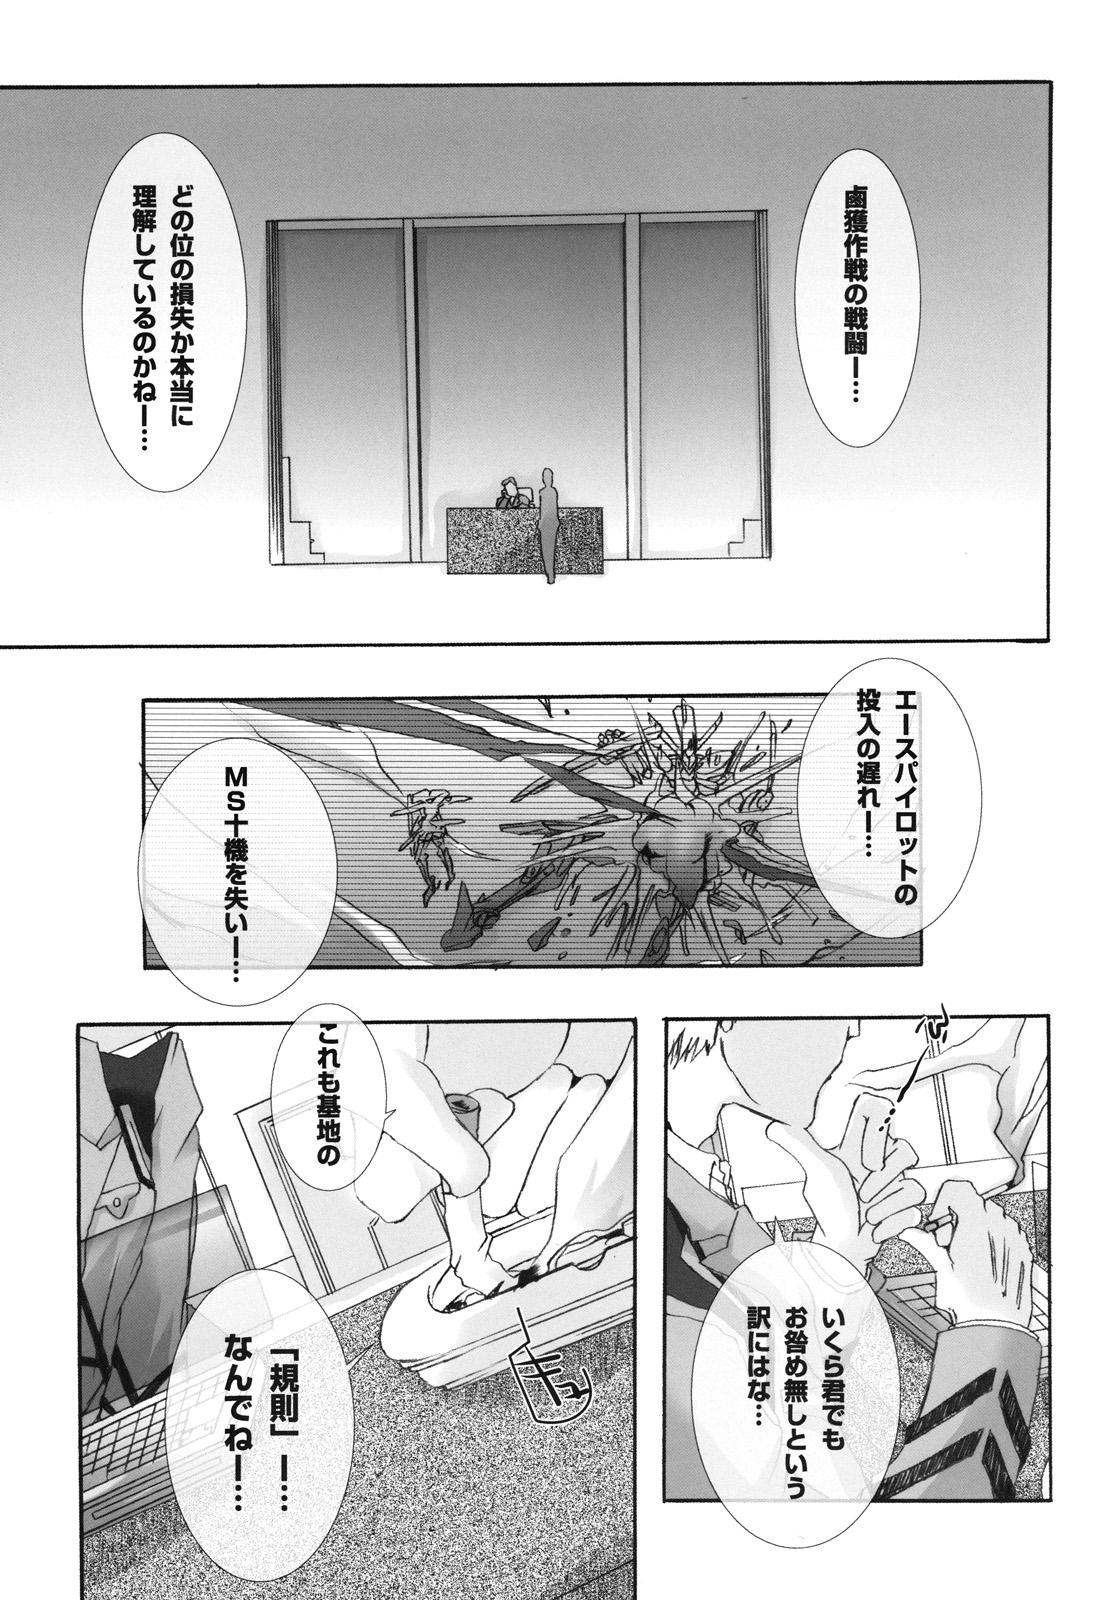 Soloboy Ryoujoku Kutsujoku - Gundam 00 Rimming - Page 4